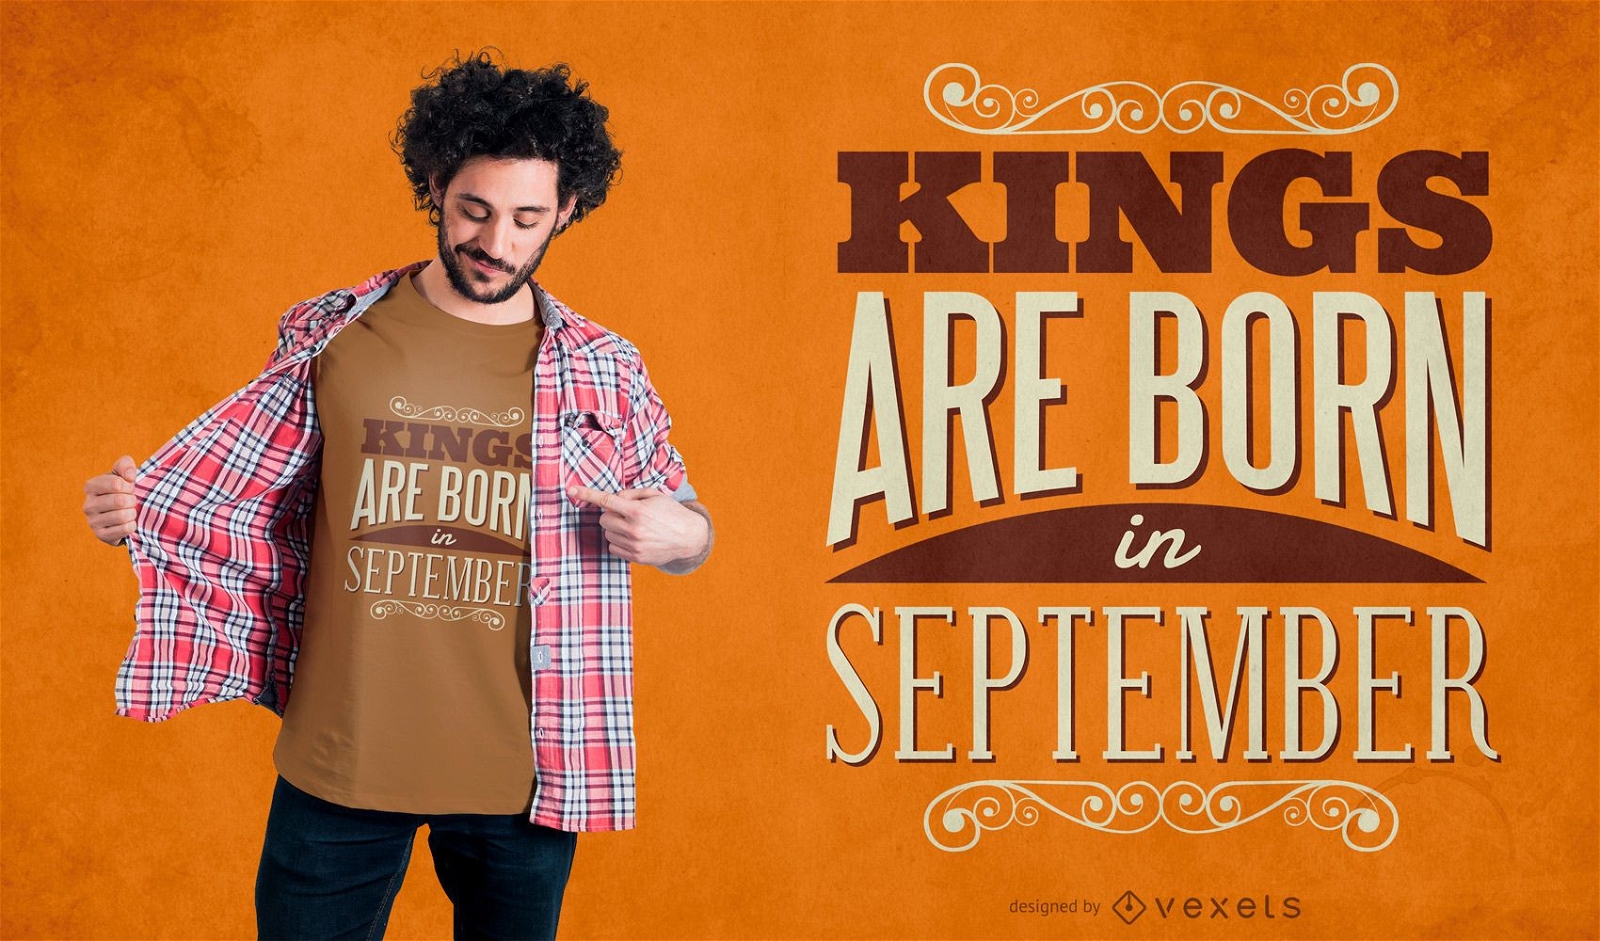 Dise?o de camiseta de reyes de septiembre.